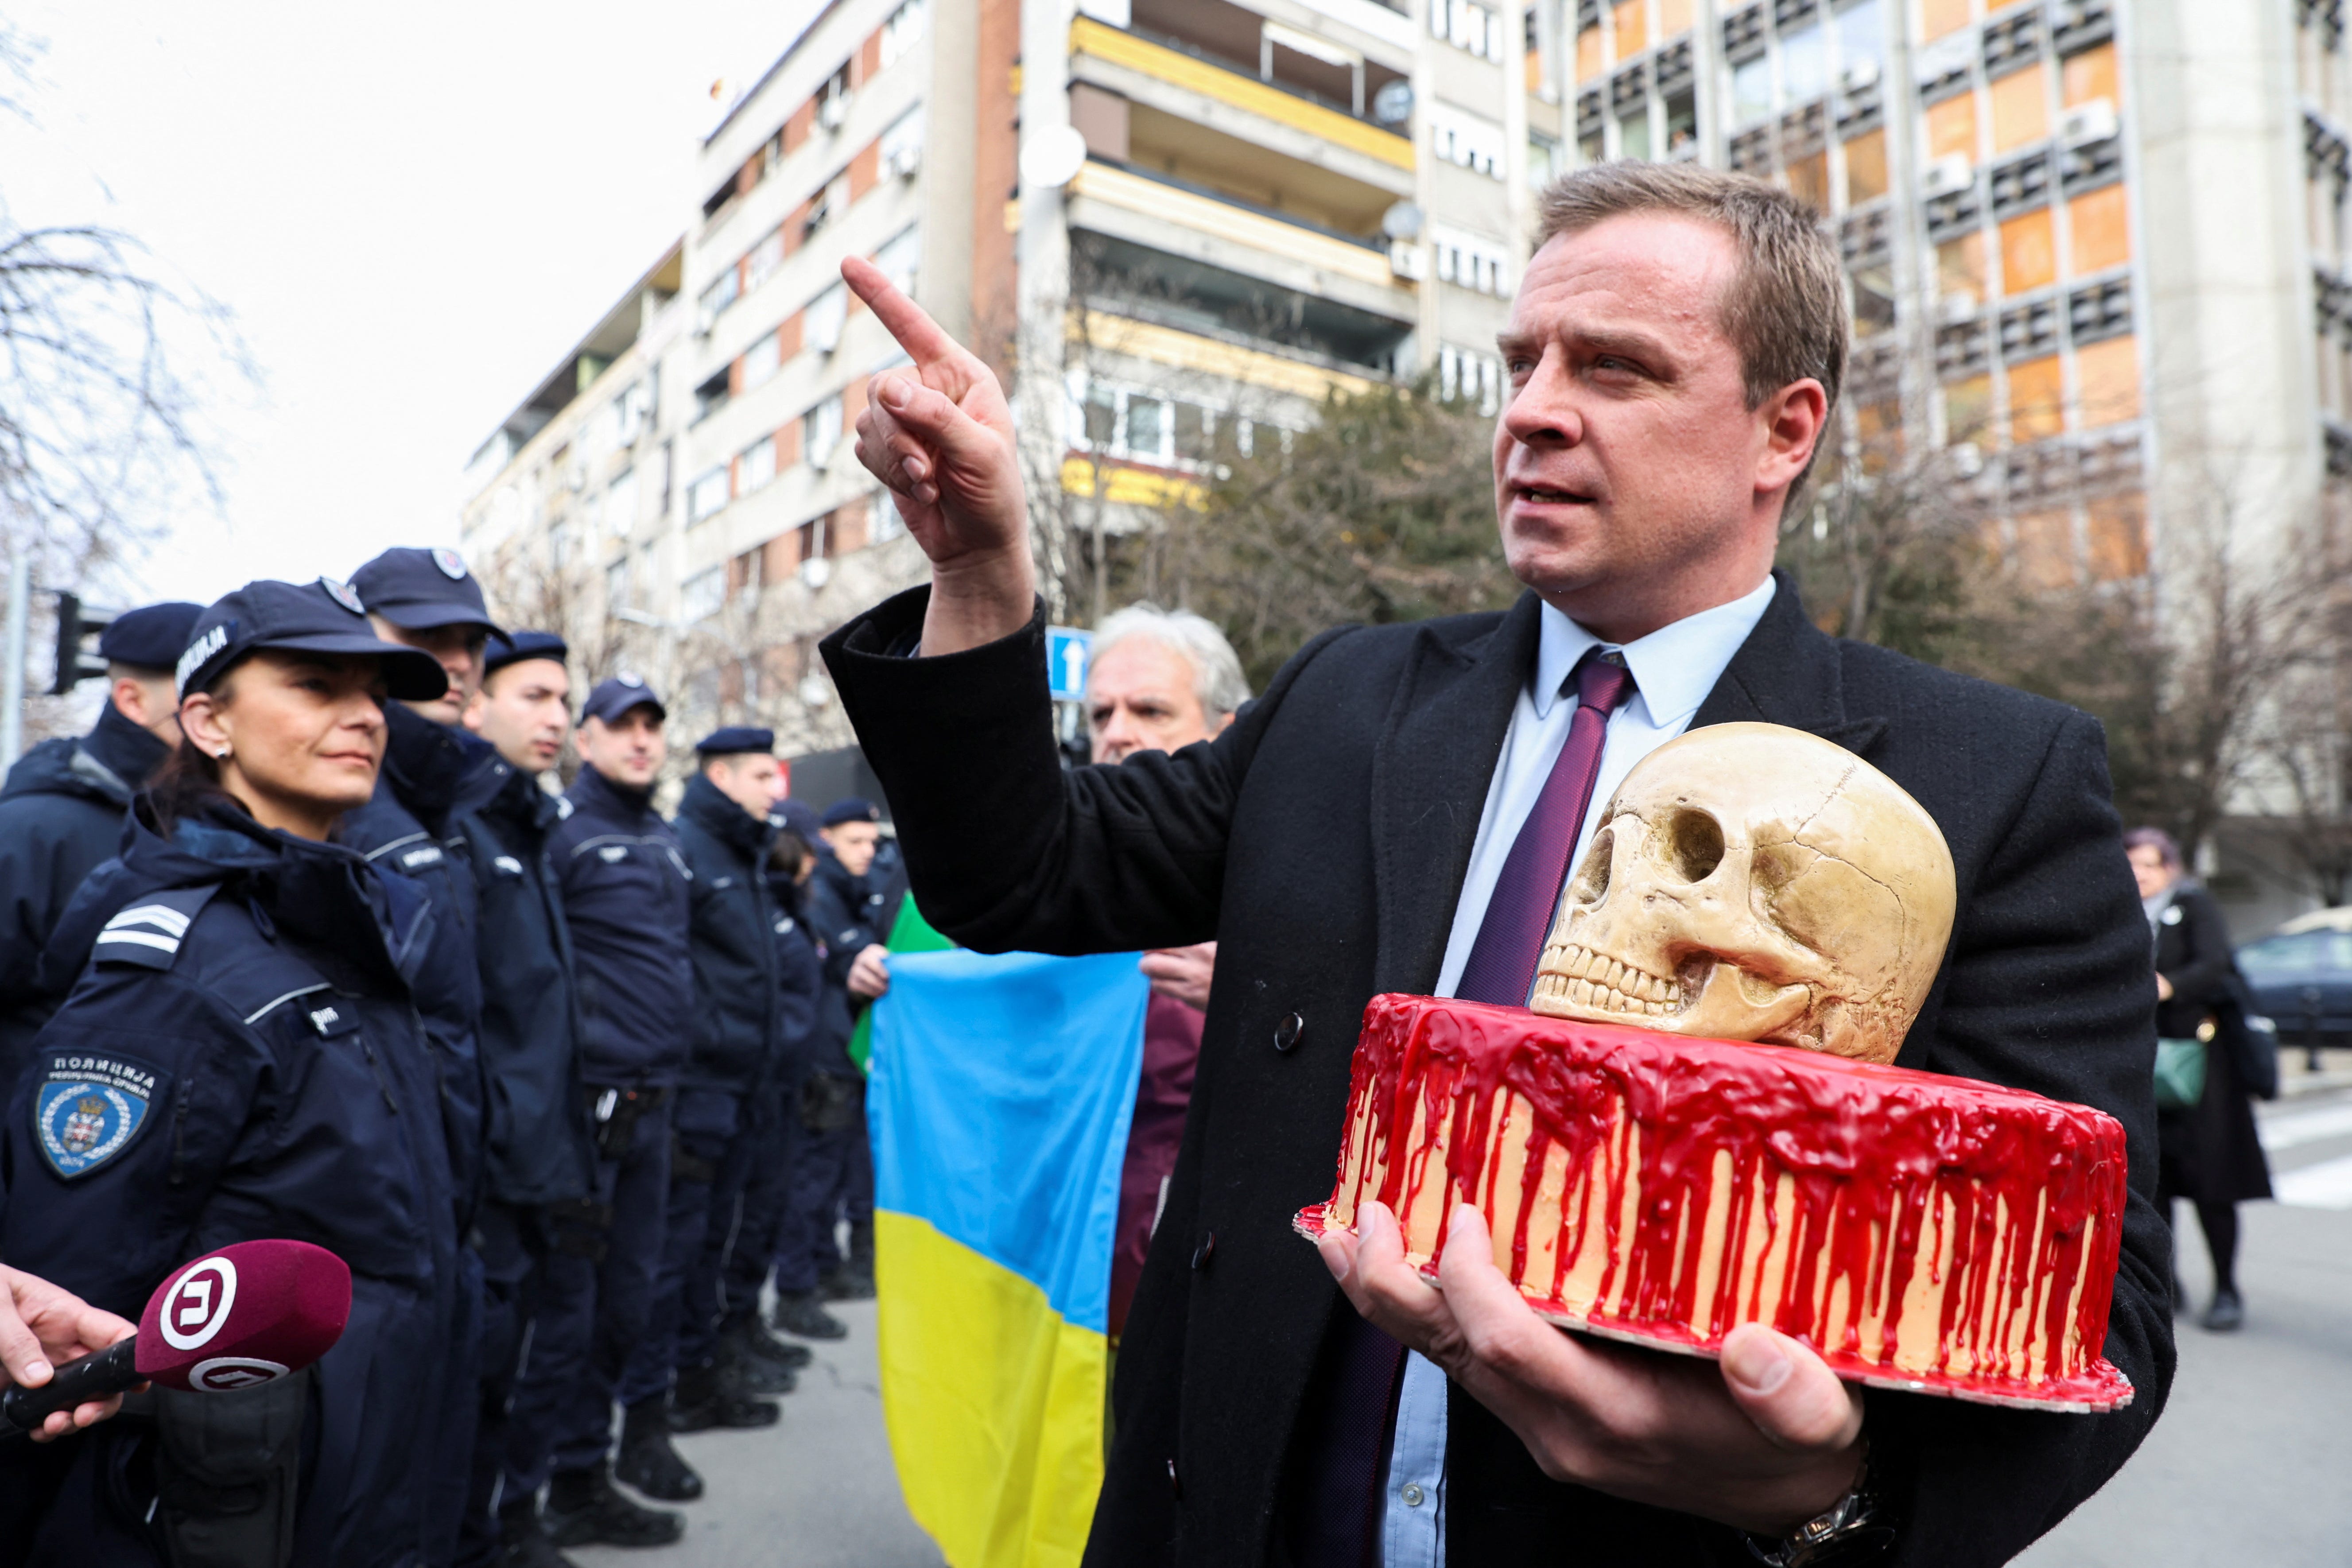 Cedomir Stojkovic, ein pro-ukrainischer Aktivist in Serbien, liefert einen blutigen Kuchen und einen Schädel an die Polizei, die die russische Botschaft in Belgrad bewacht, am Jahrestag der russischen Invasion in der Ukraine in Belgrad, Serbien, 24. Februar 2023.